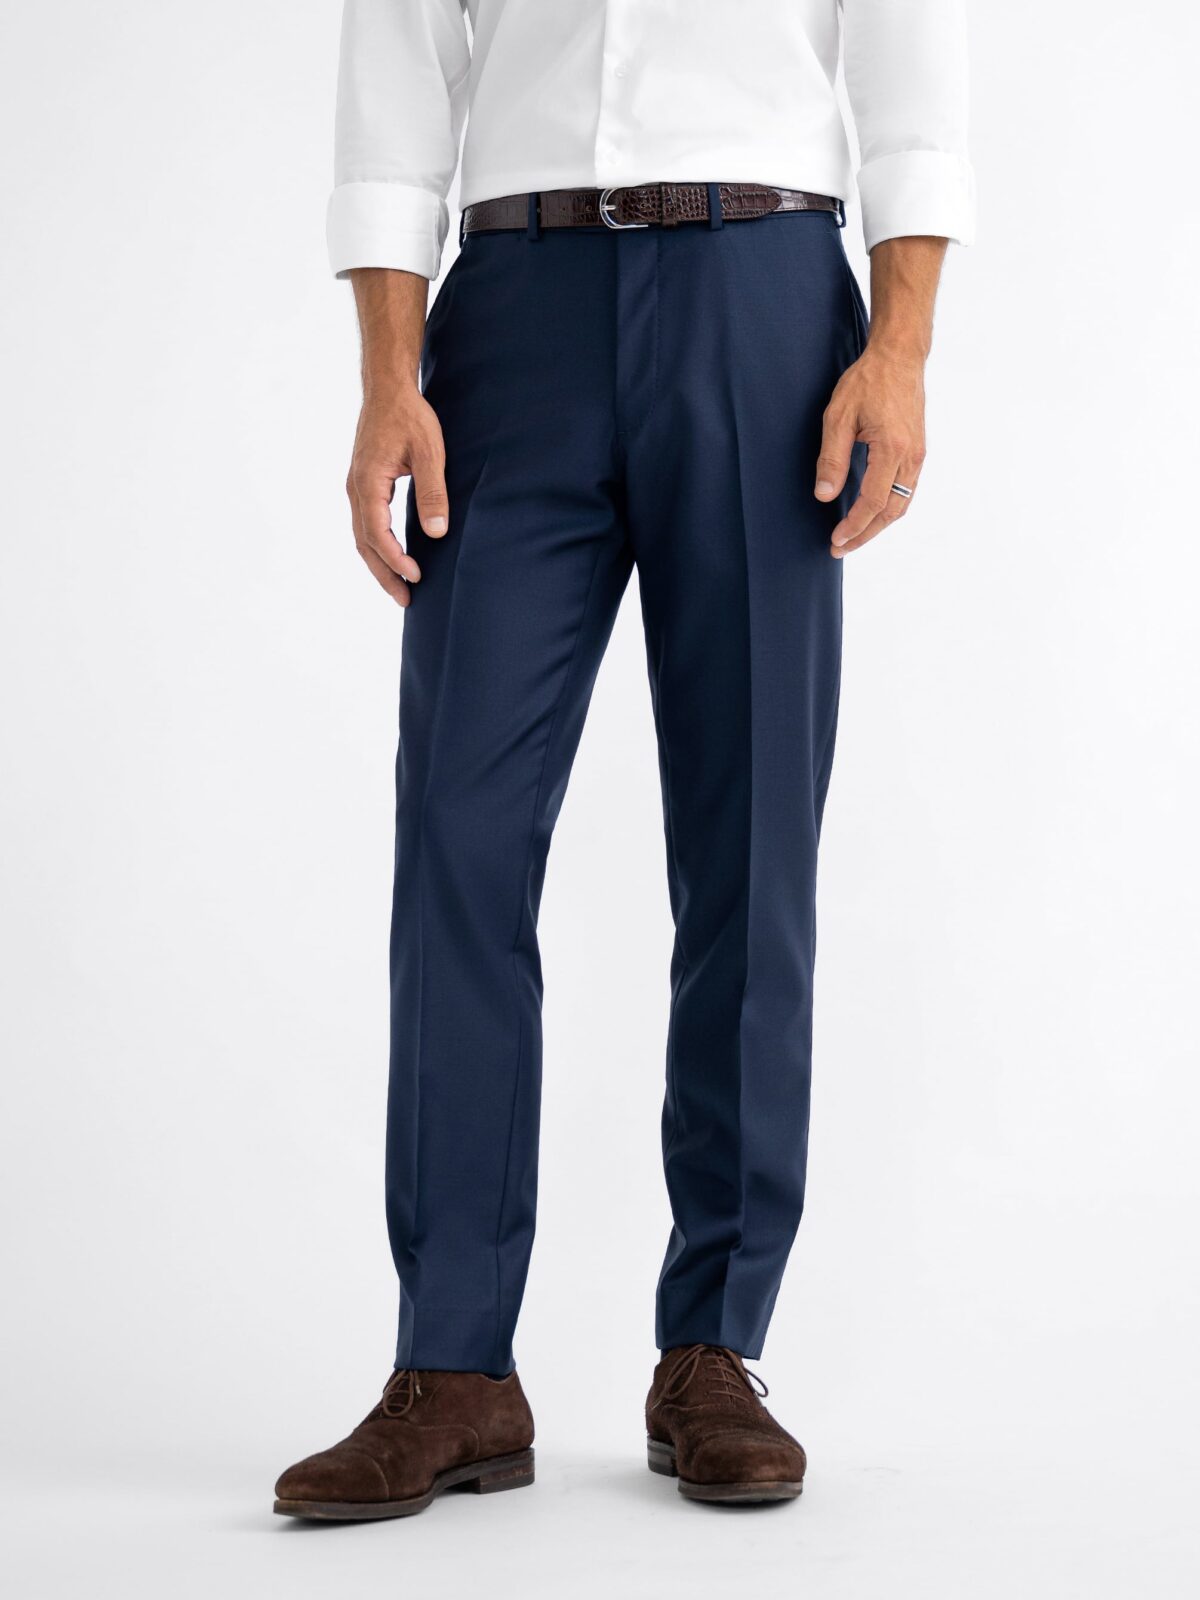 Men's Dark Blue Twill Classic Fit Suit Pants